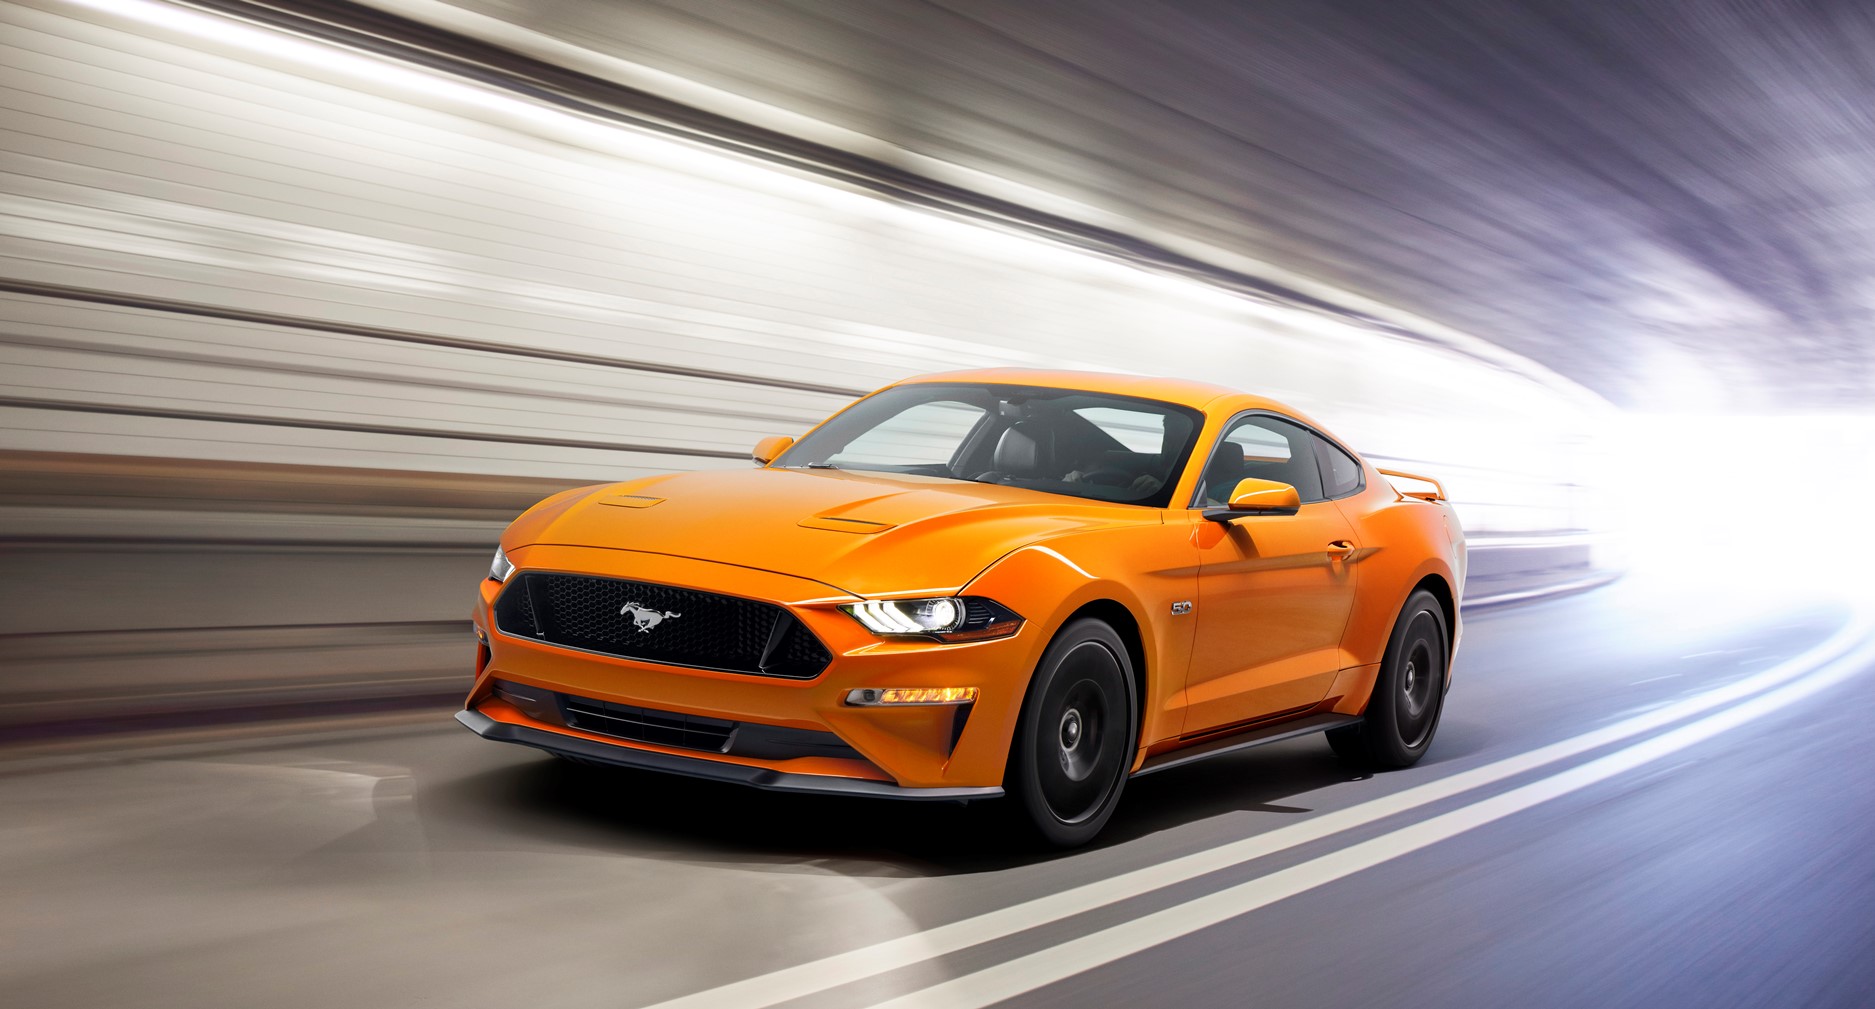 Pré-venda do Mustang supera expectativas até da Ford